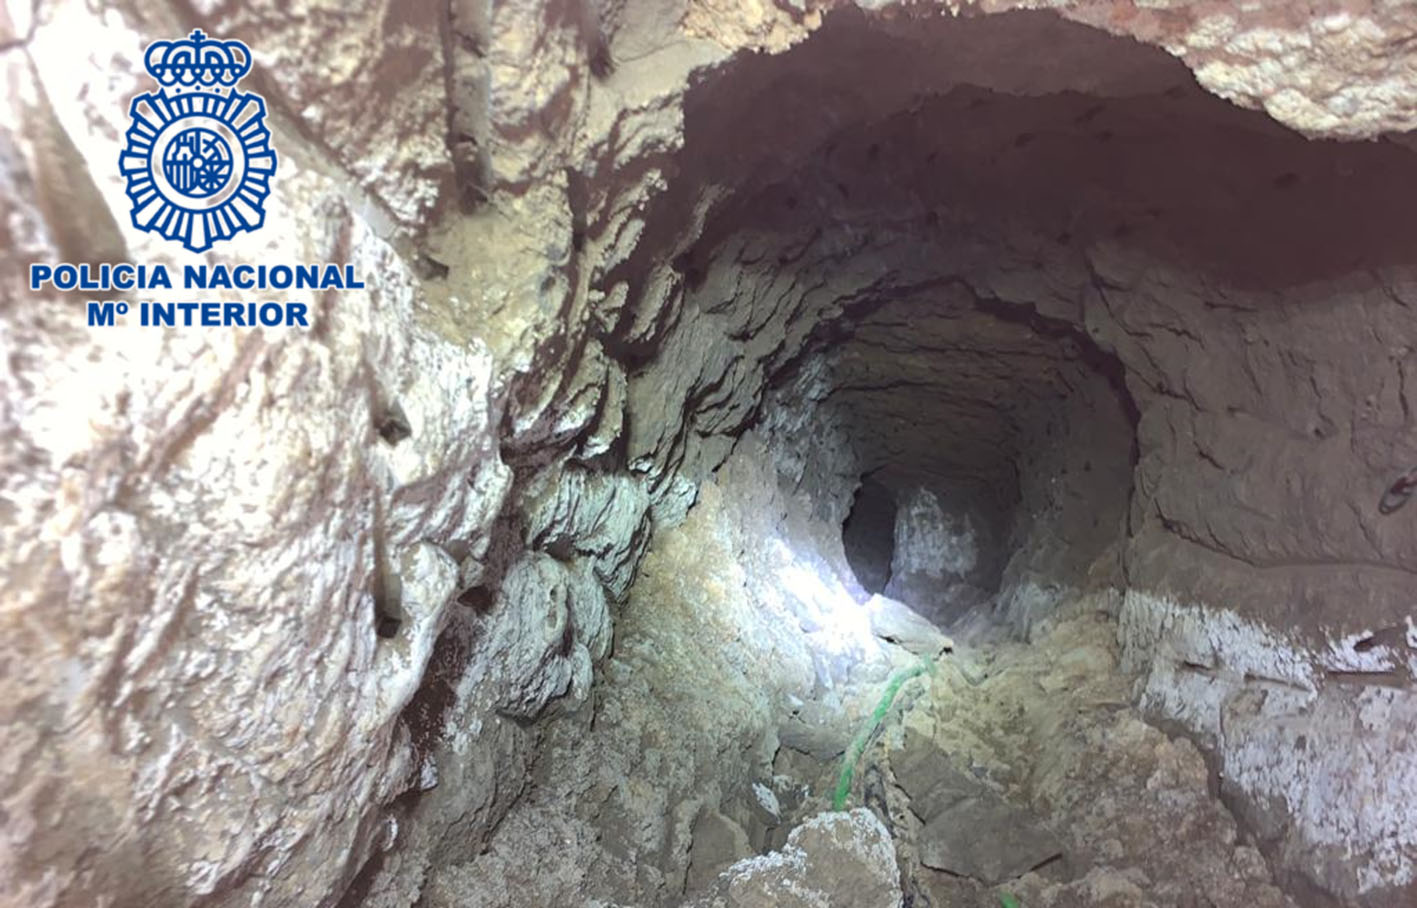 La organización criminal había abierto un túnel de unos 10 metros de longitud por el que iba una conexión ilegal a la red eléctrica.